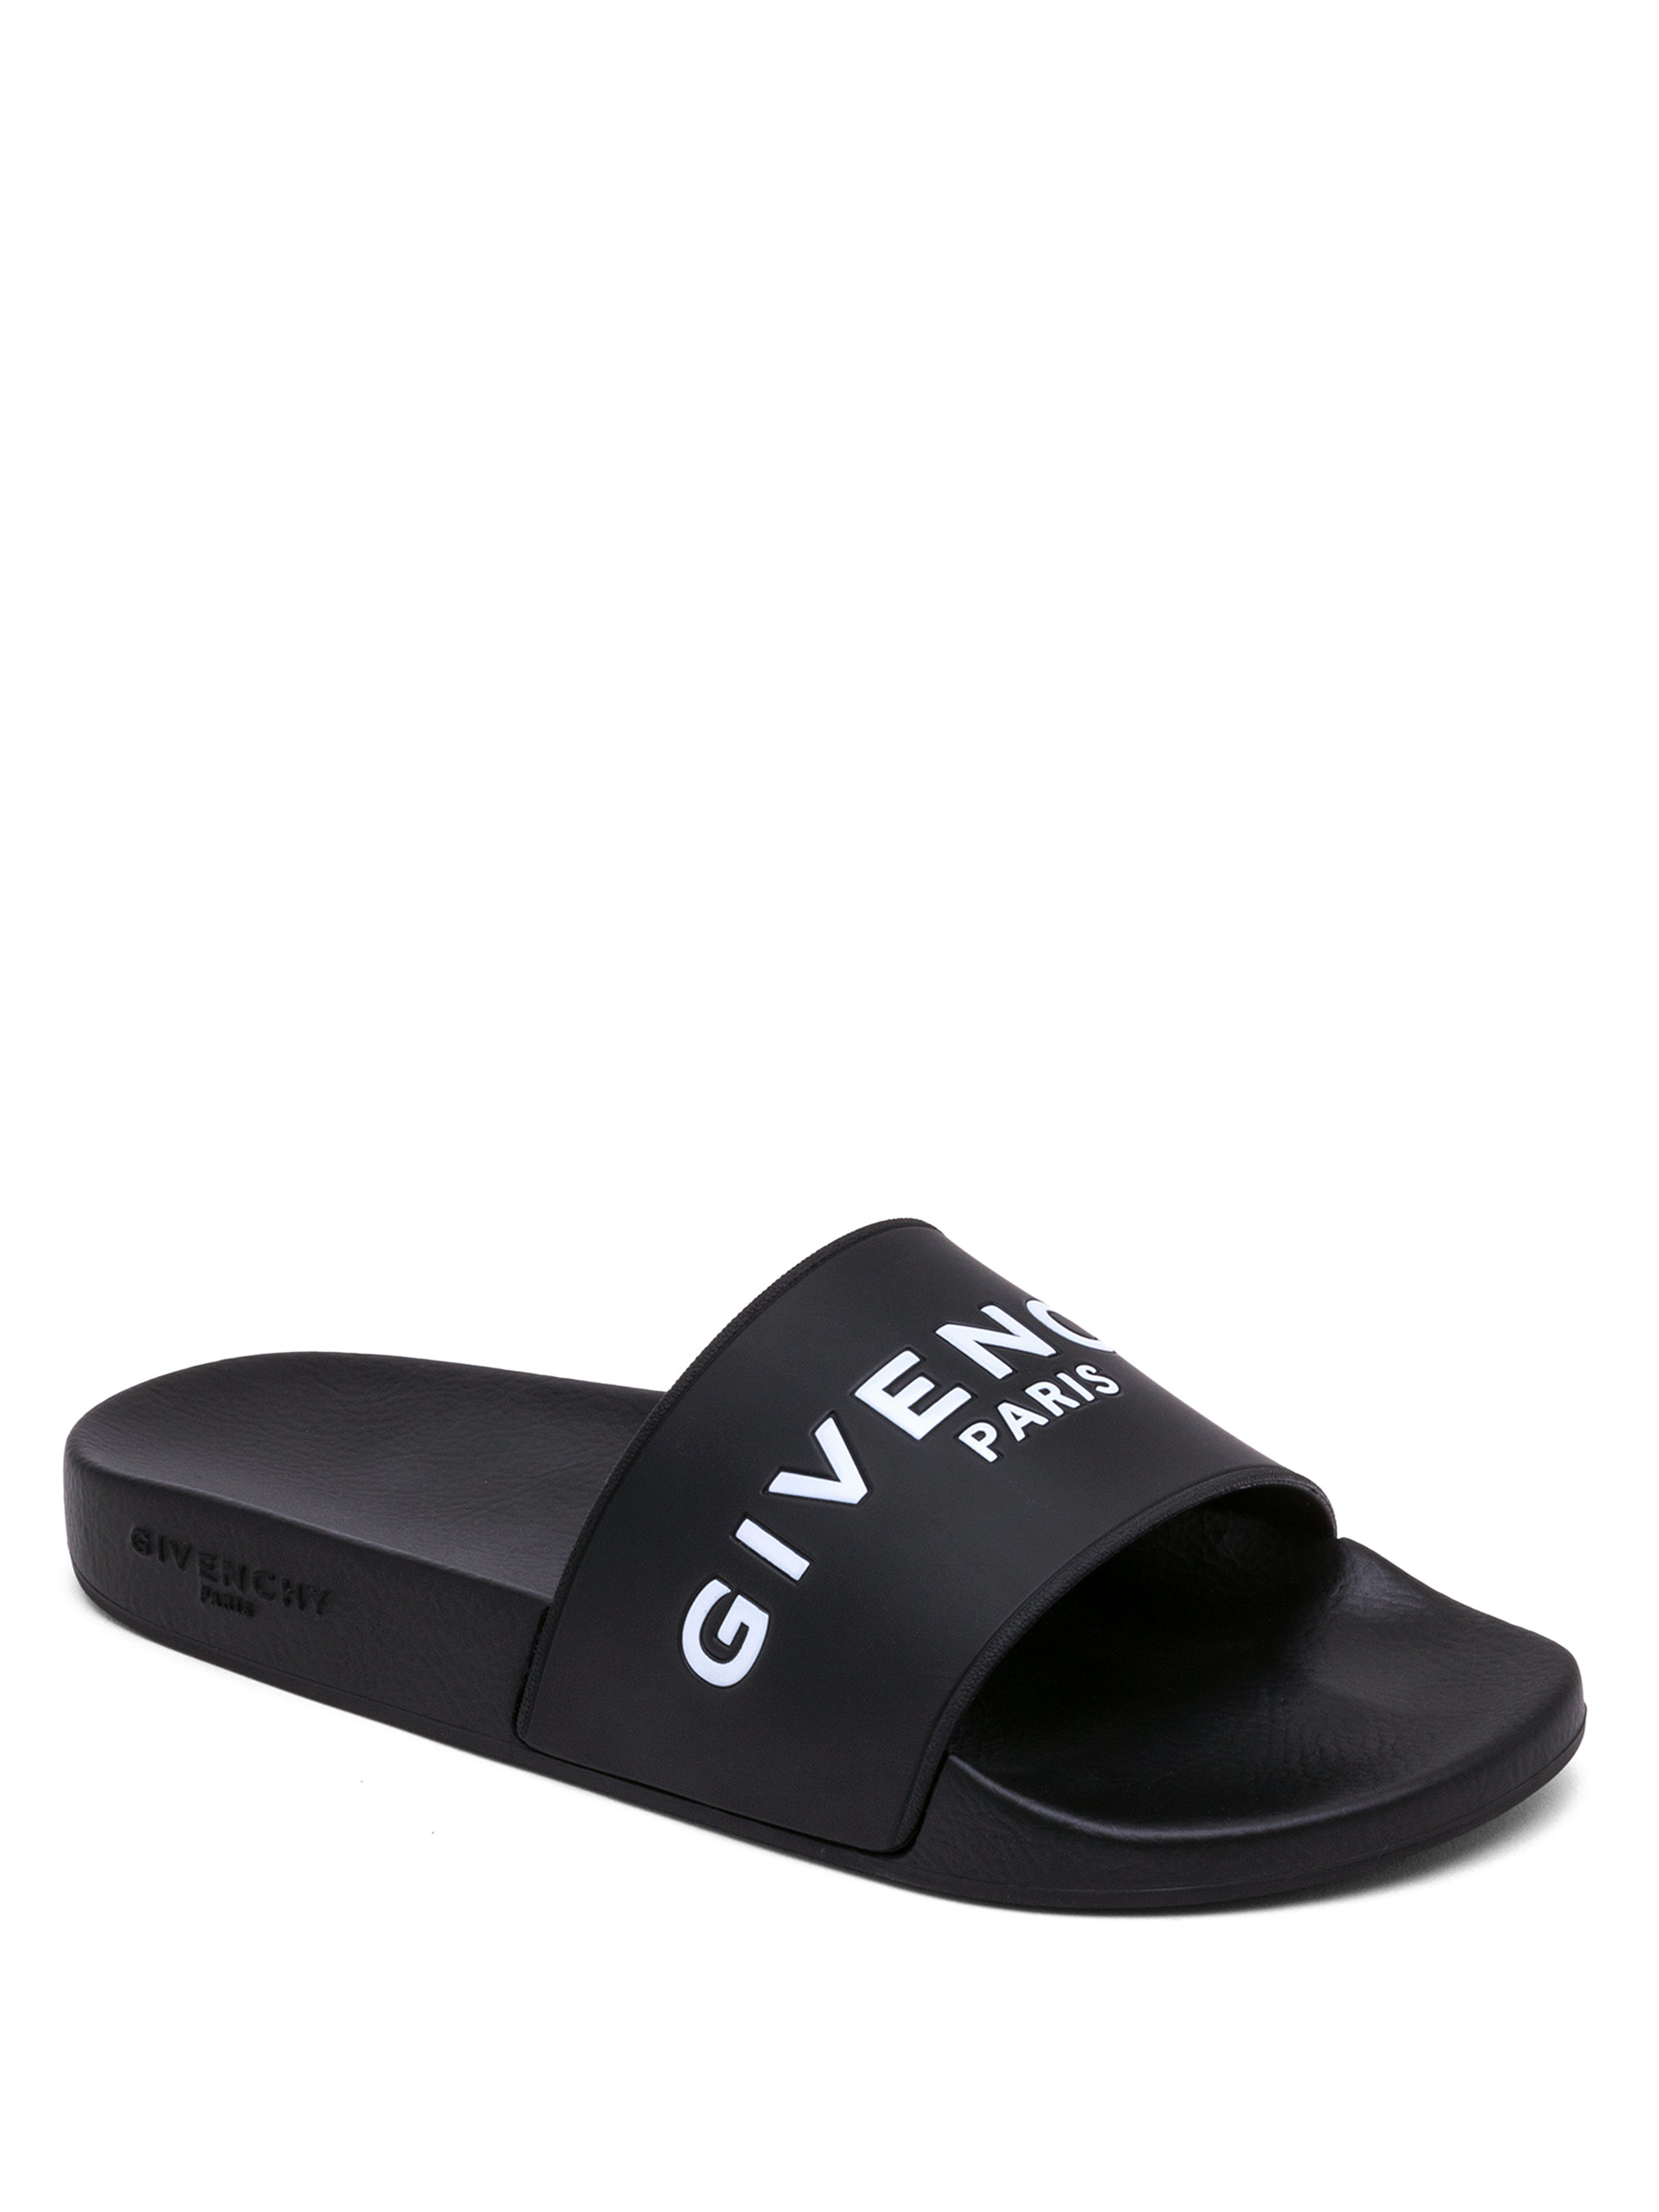 Givenchy Logo Rubber Slides in Black for Men | Lyst